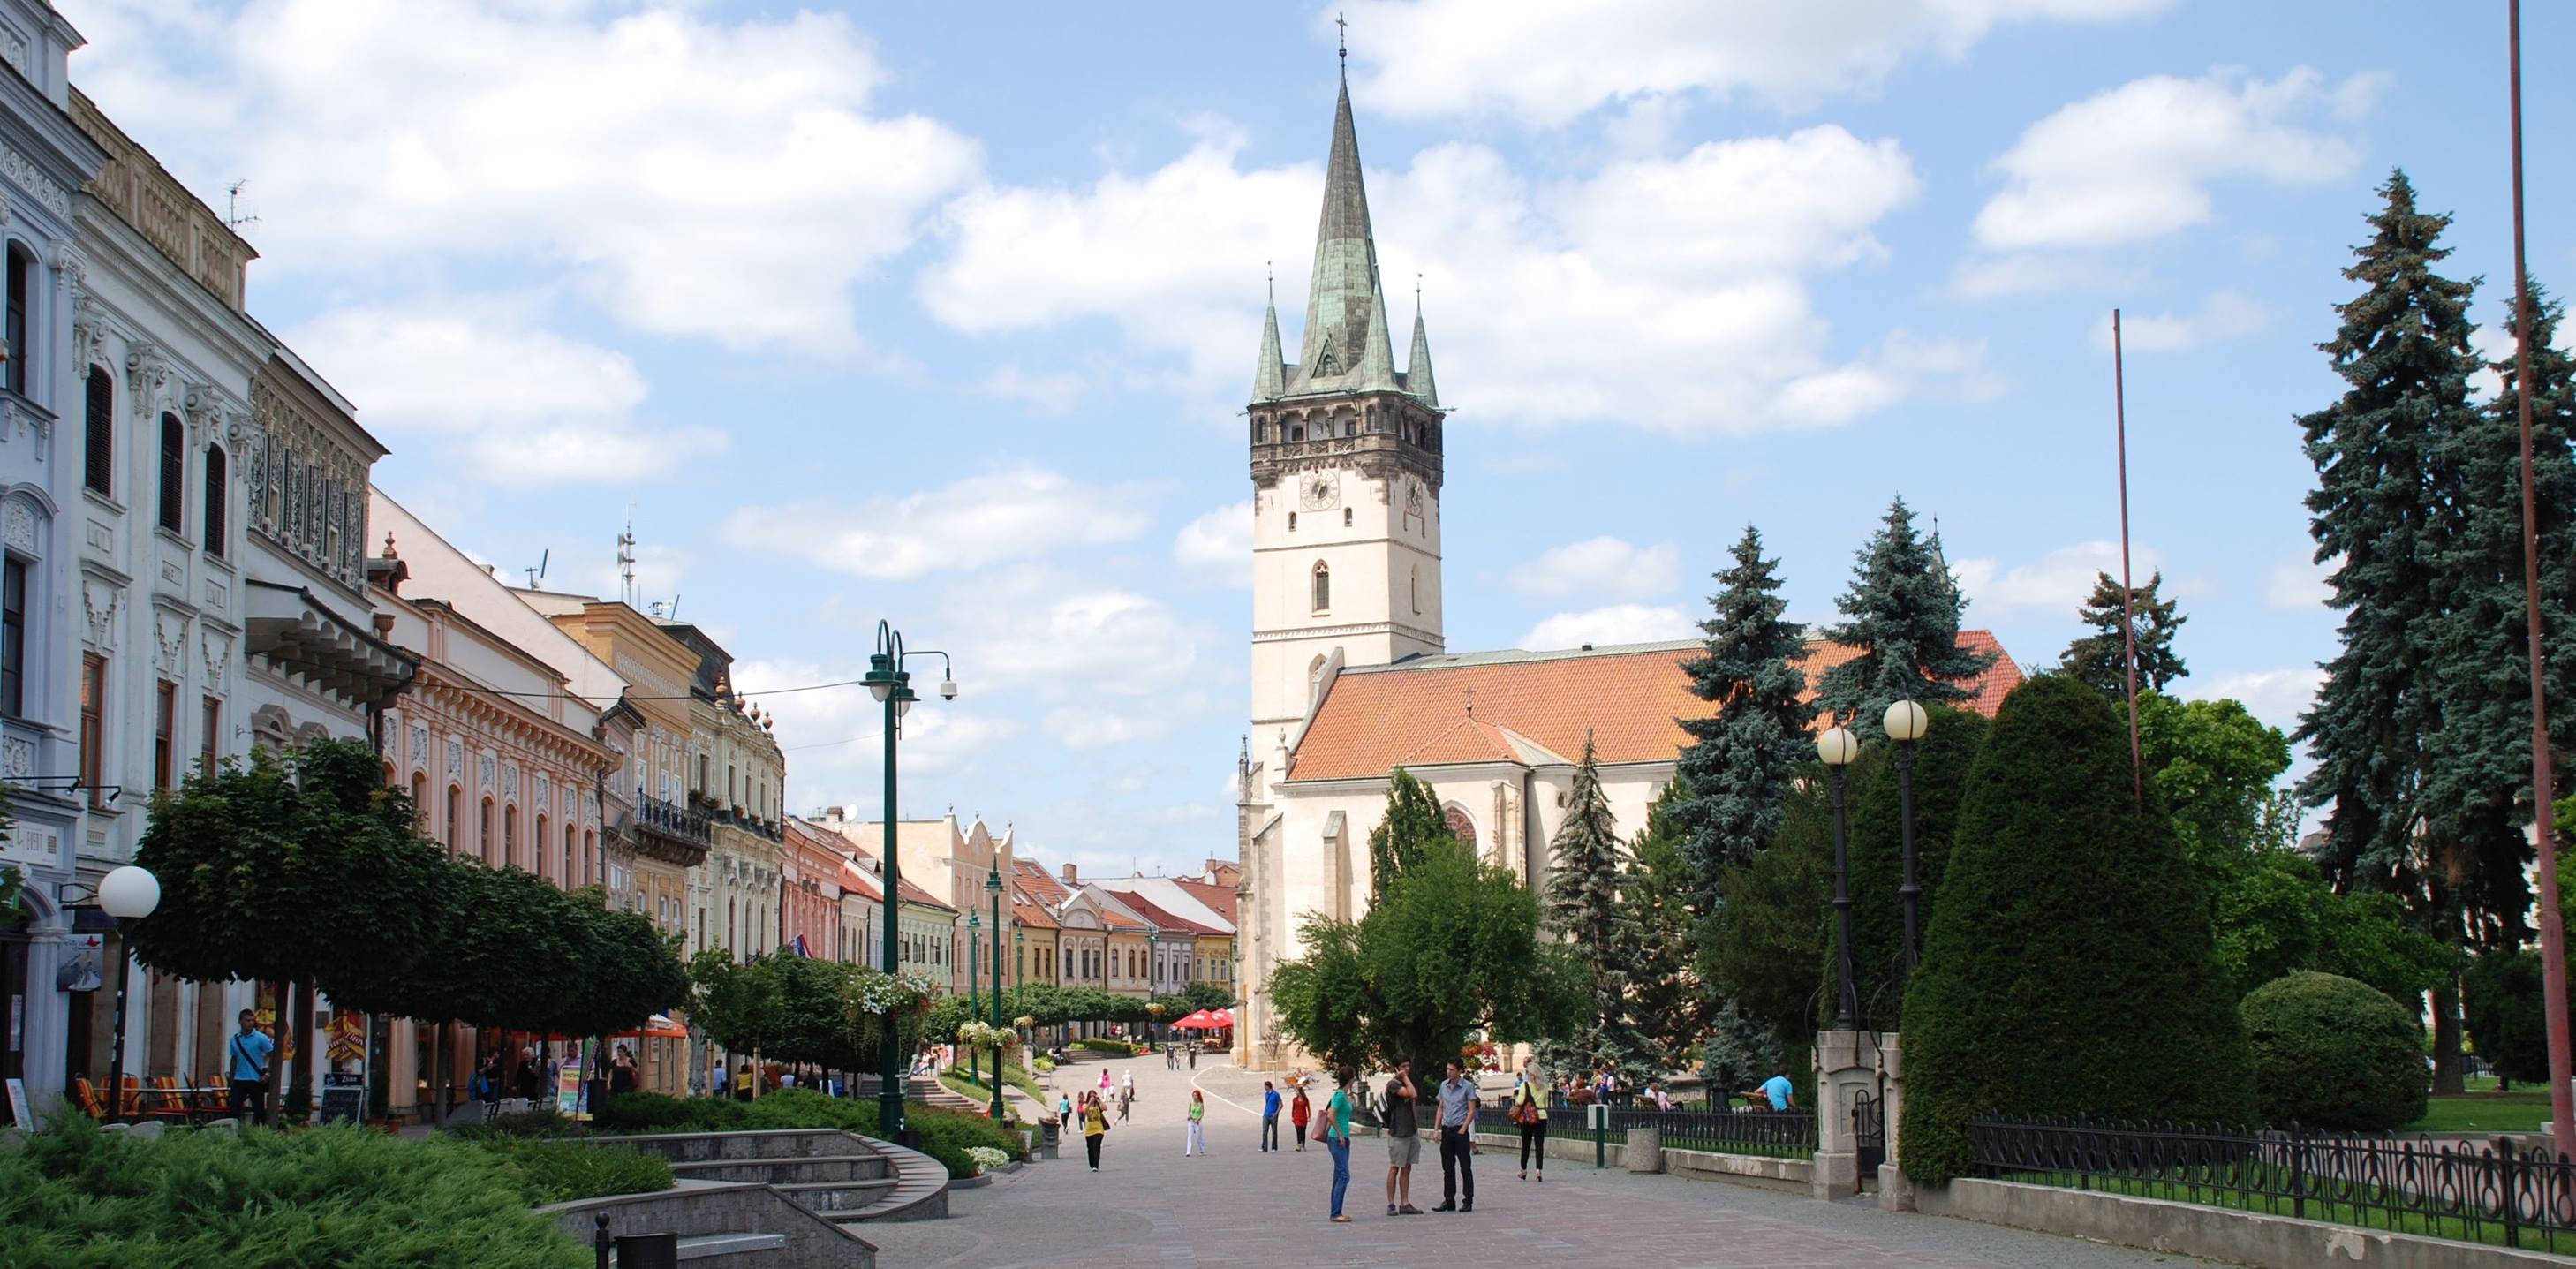 Ak by boli komunálne voľby dnes: Koho by ste volili za primátora mesta Prešov?